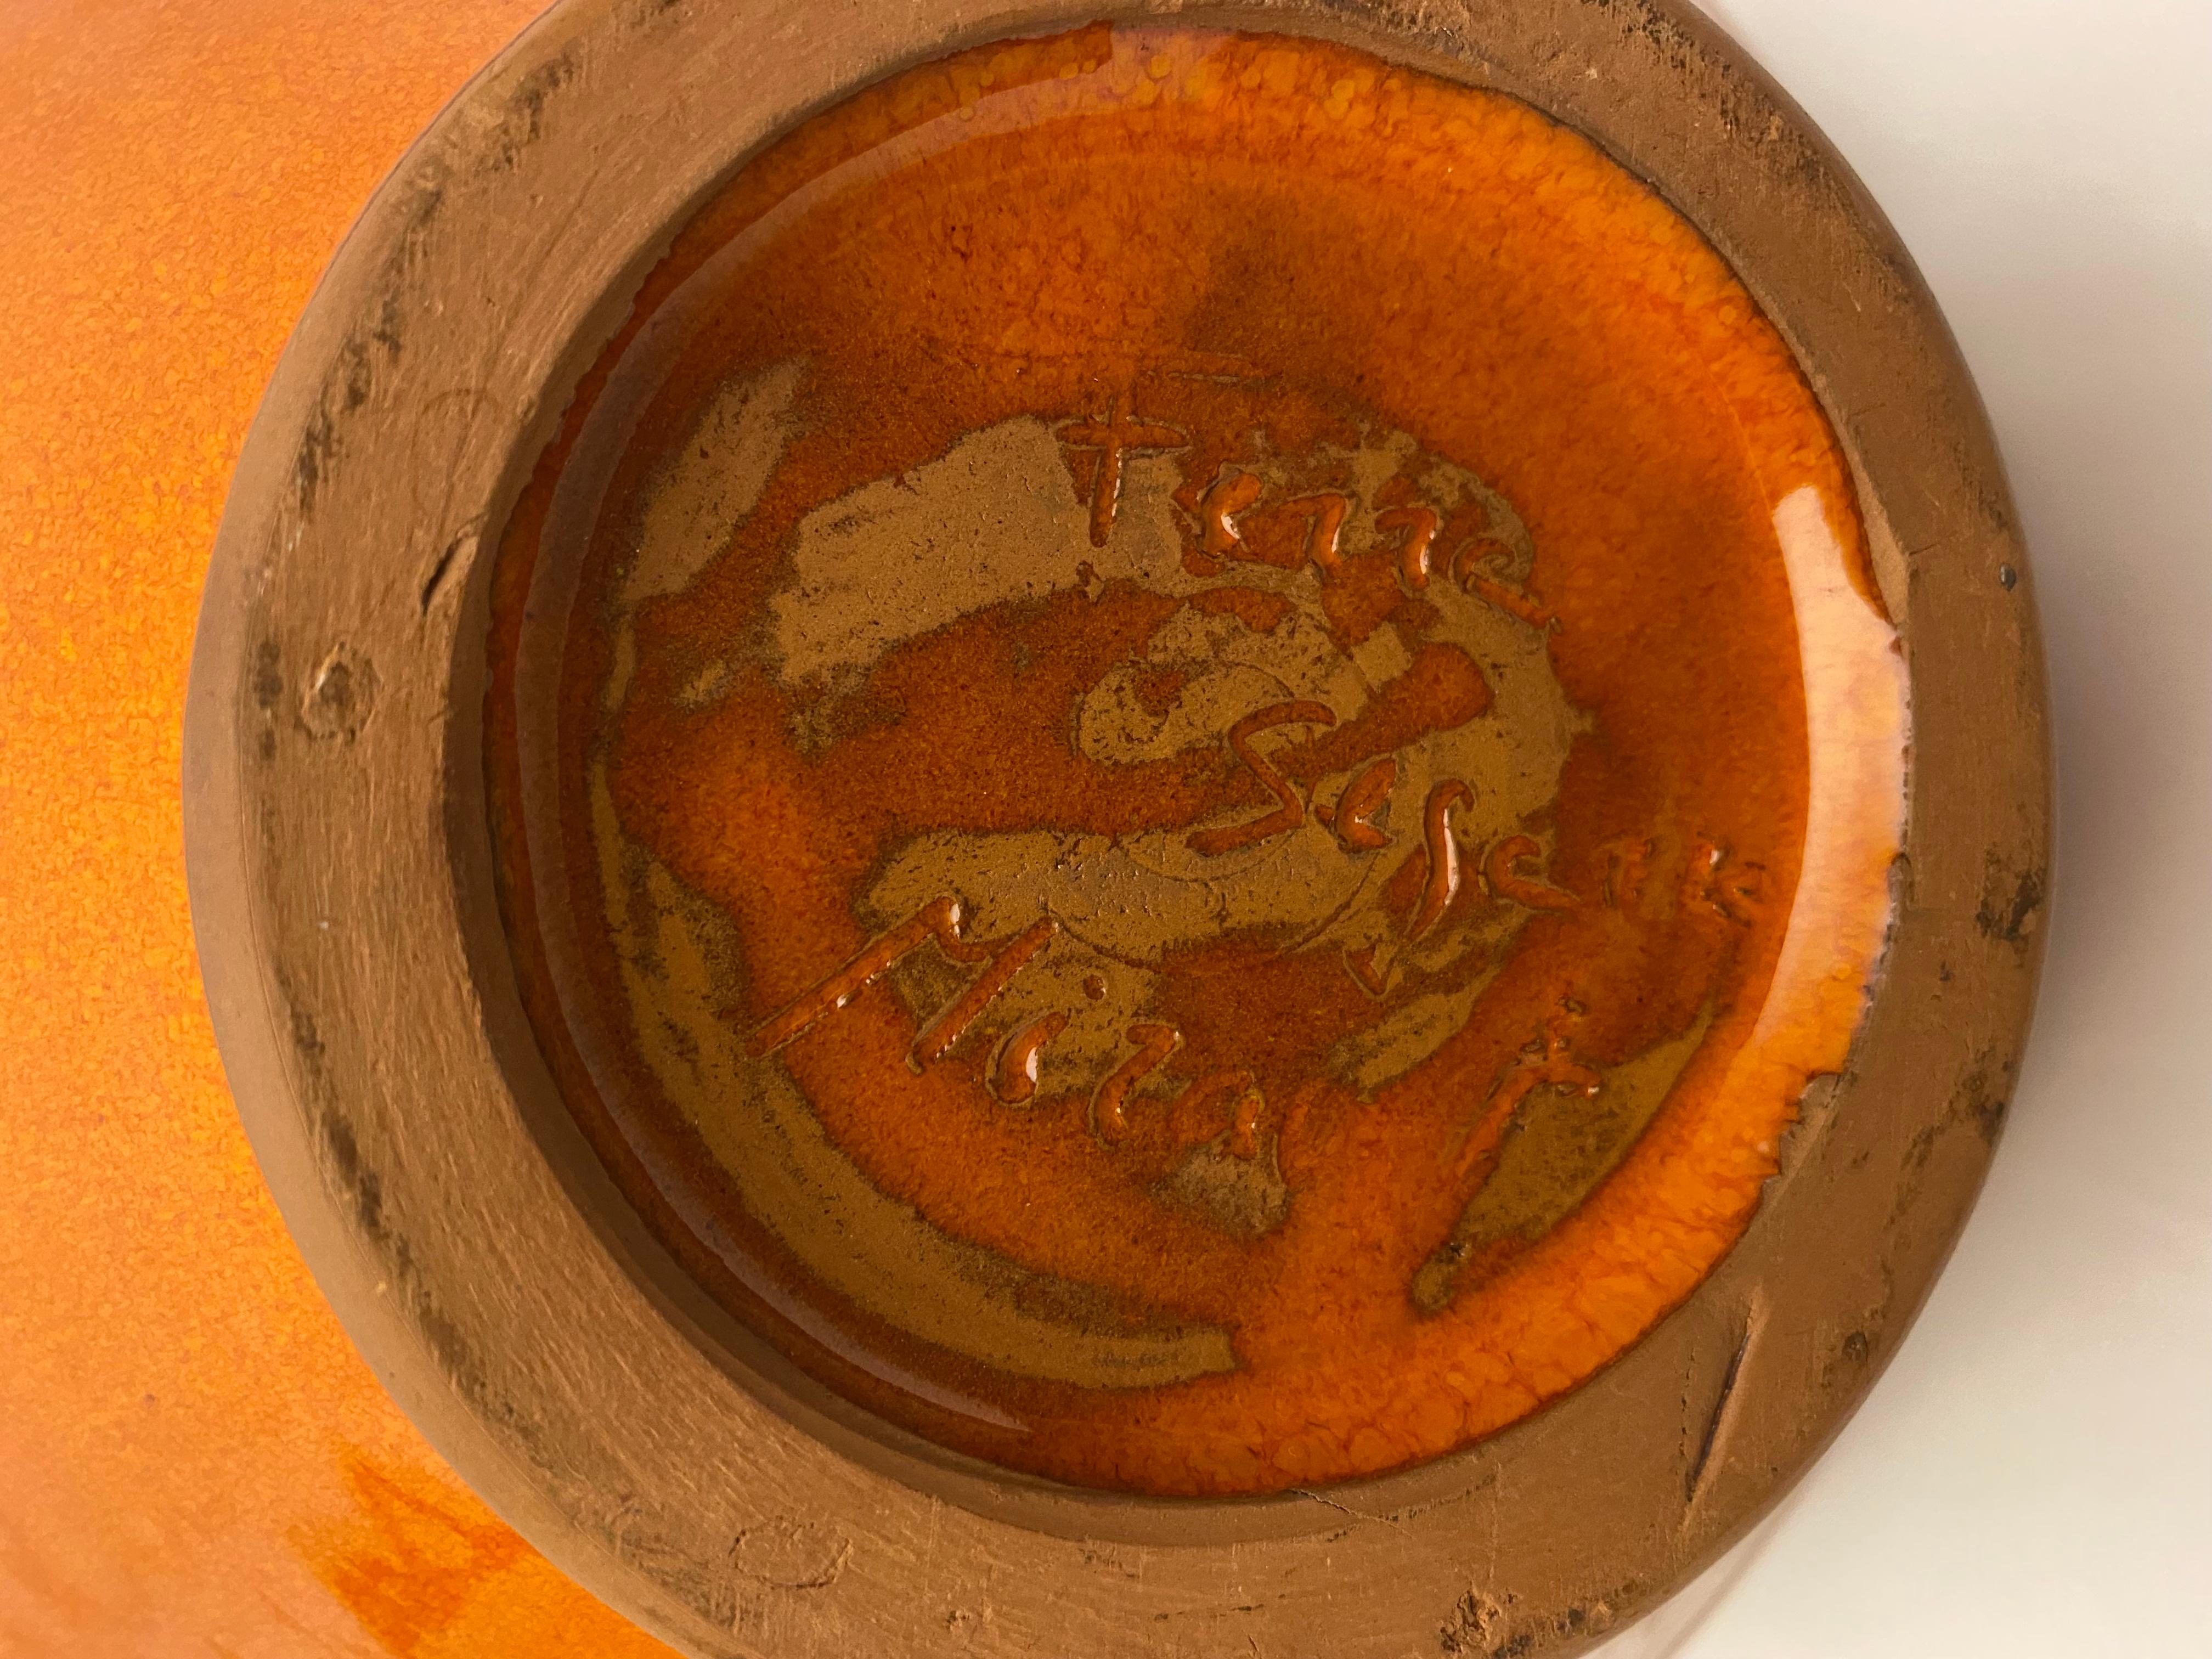 Eine atemberaubende glasierte Keramikvase aus der Mitte des 20. Jahrhunderts in auffälligen Orange- und Schwarztönen. Wunderschönes handgefertigtes Design. 
Unterzeichnet Ferre Sega Mizal

Die glasierte Oberfläche und die Beleuchtung beim